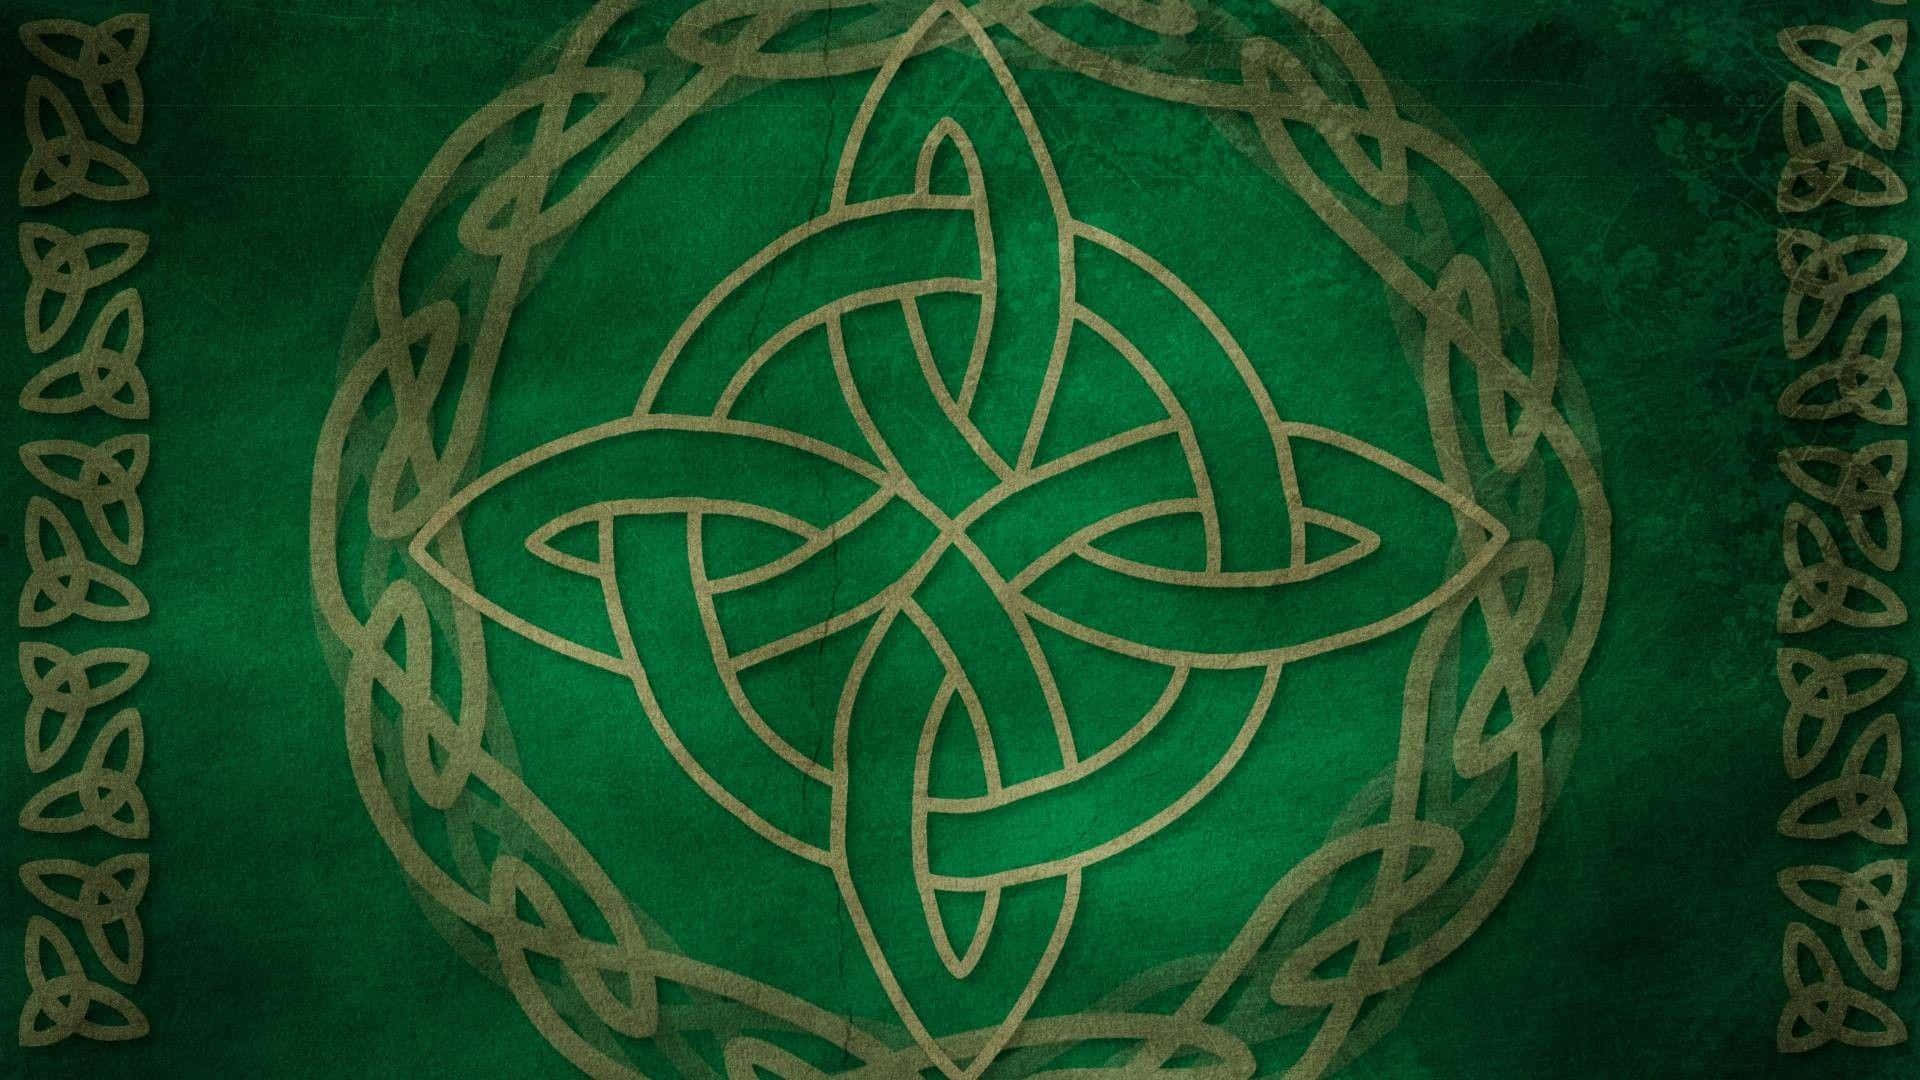 Keltiskeknuder På En Grøn Baggrund.